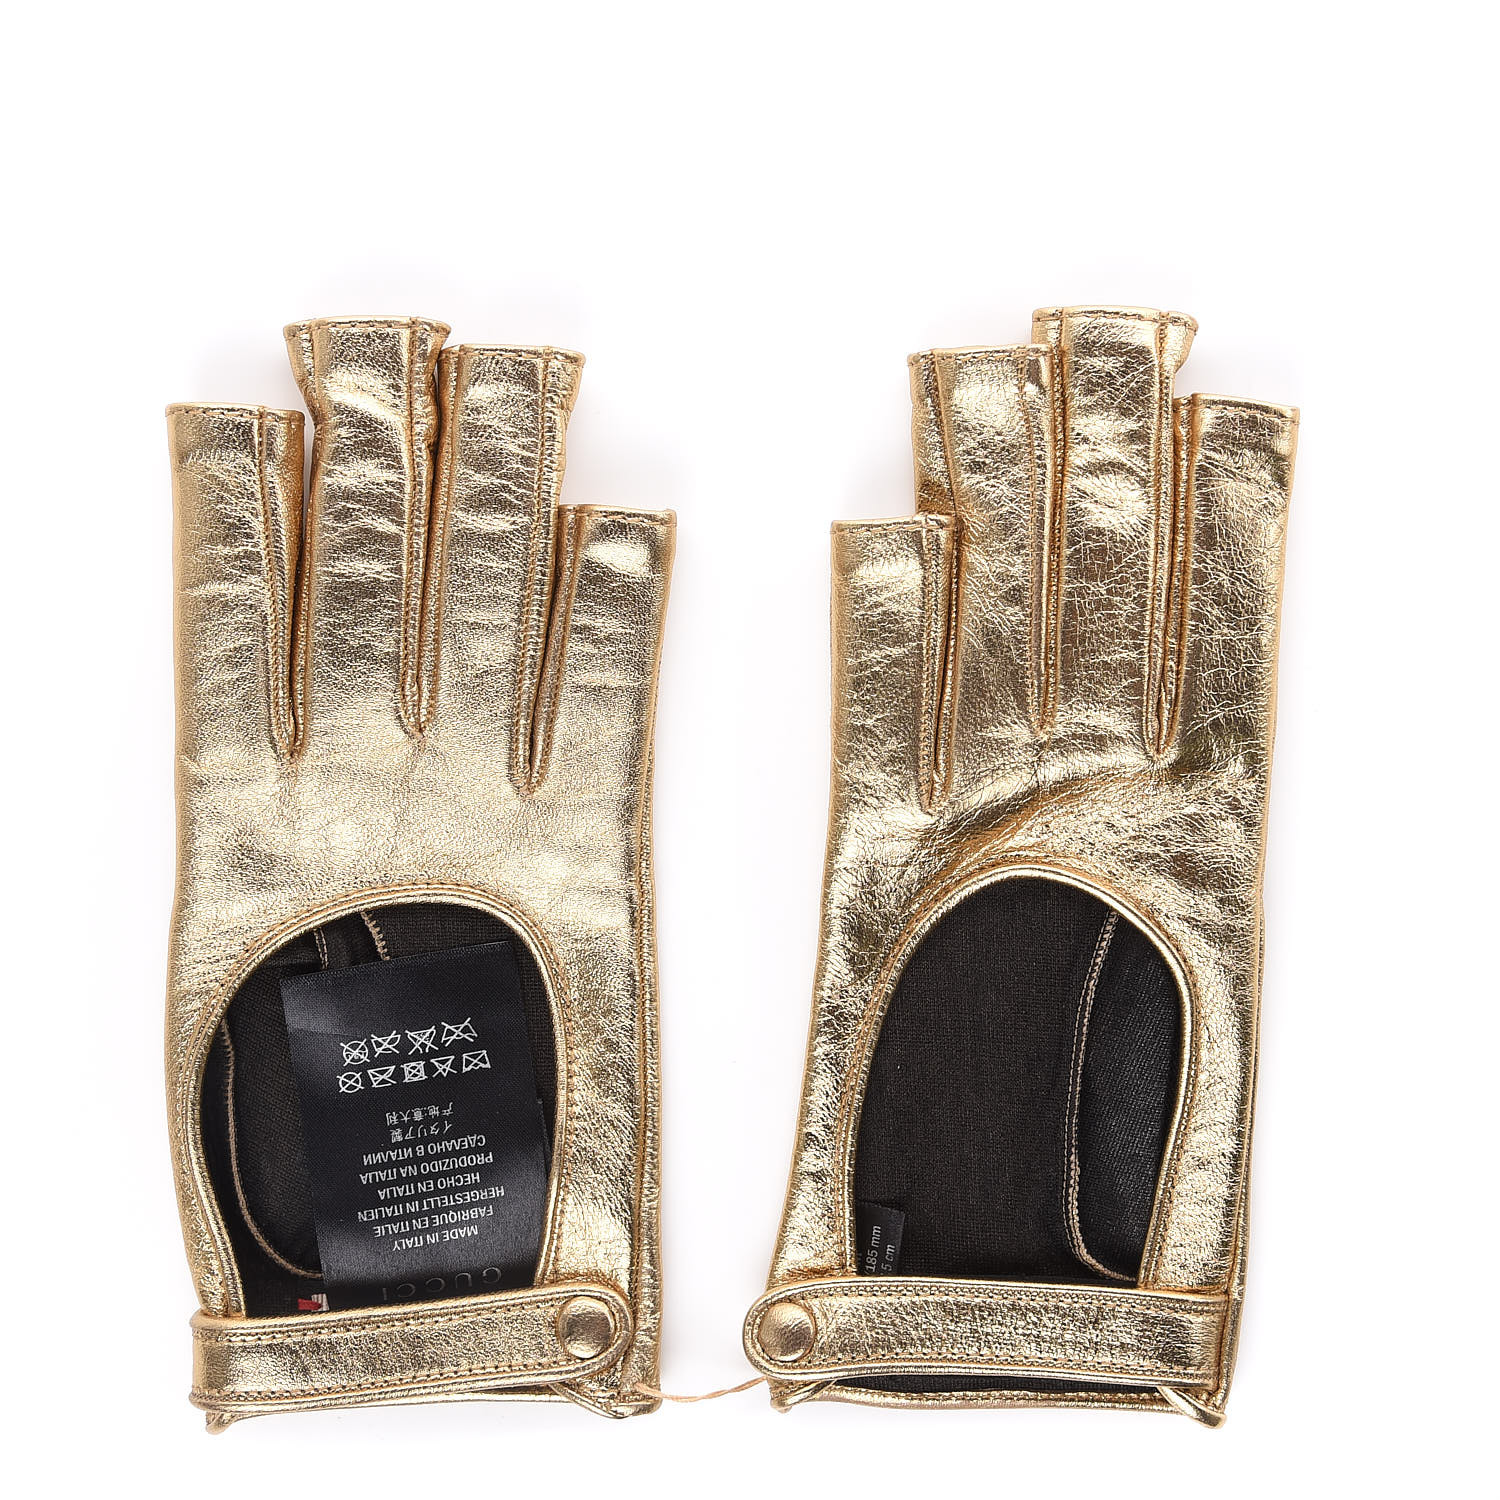 metallic fingerless gloves